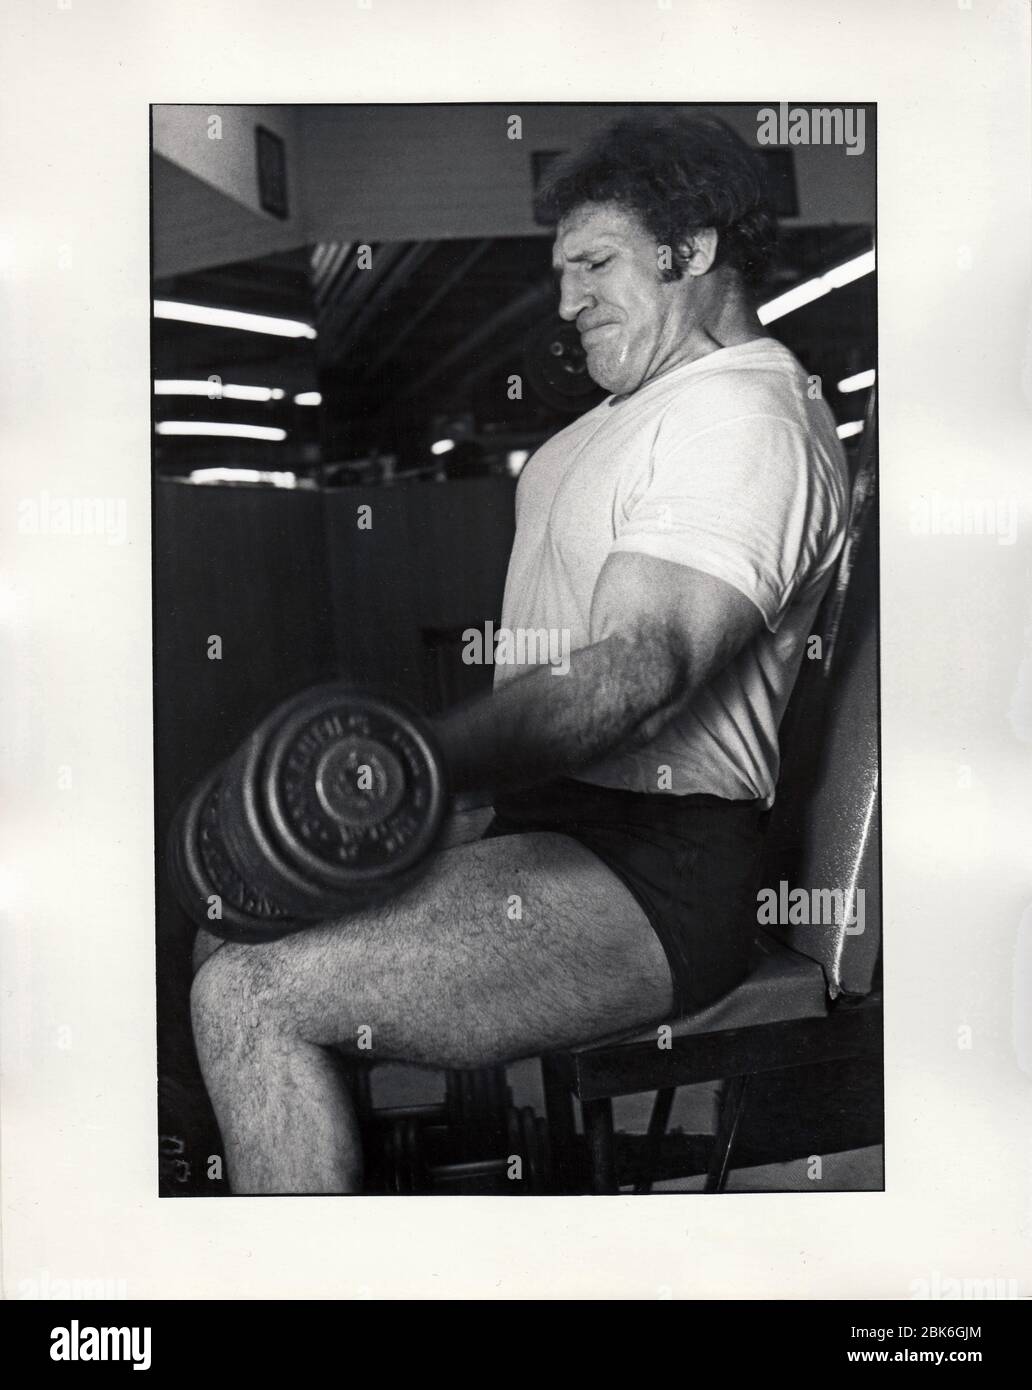 Der ehemalige Weltmeister Bruno Sammartino rollt in einem Fitnessstudio in Midtown Manhattan, New York City, sehr schwere Gewichte. Ca. 1975. Stockfoto